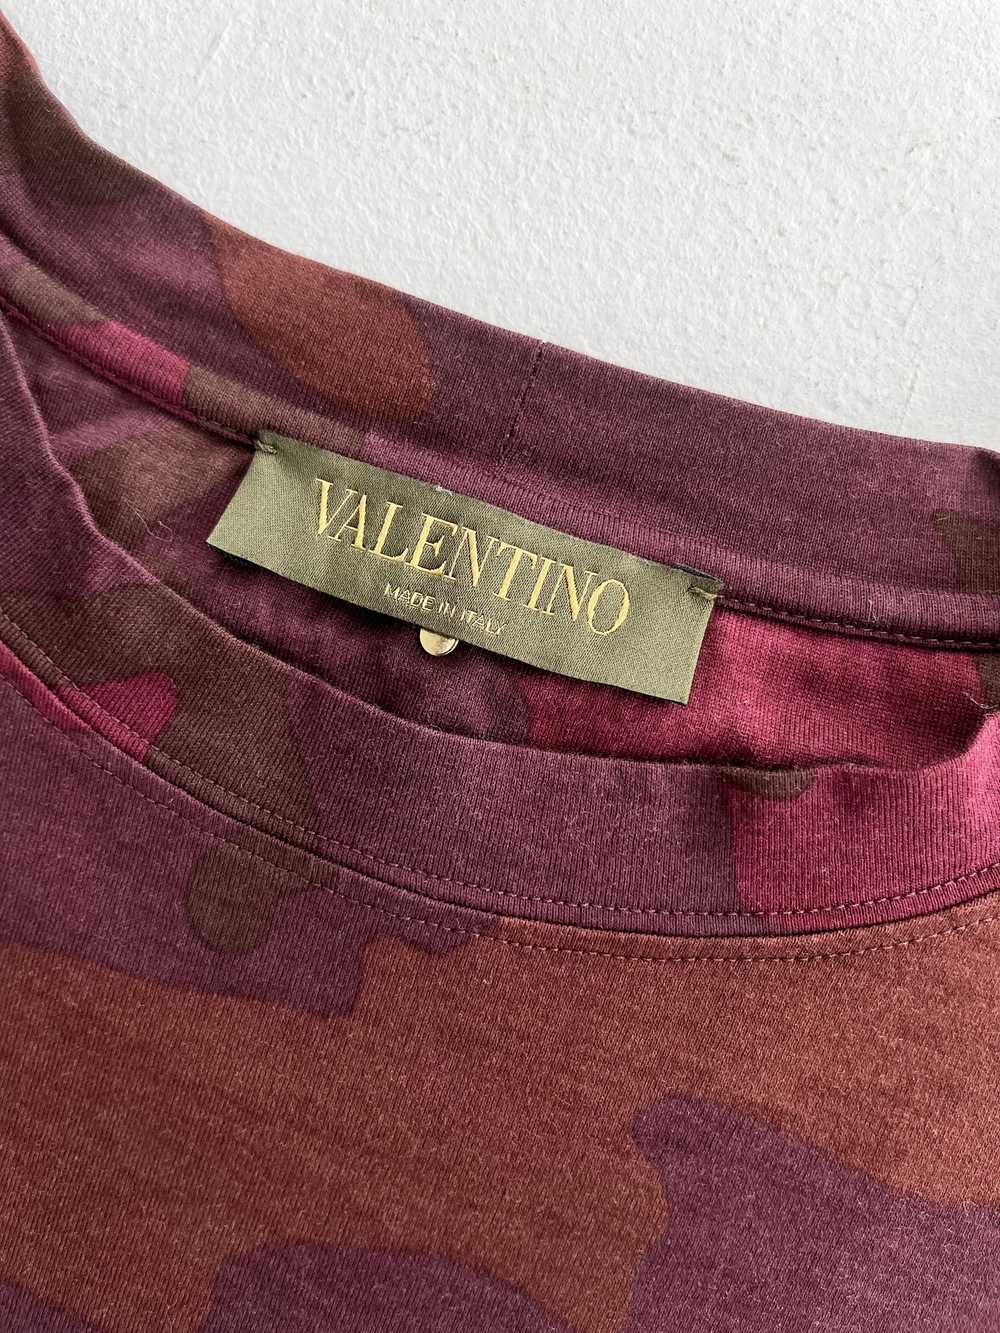 Valentino Burgundy Camo T-Shirt - image 6